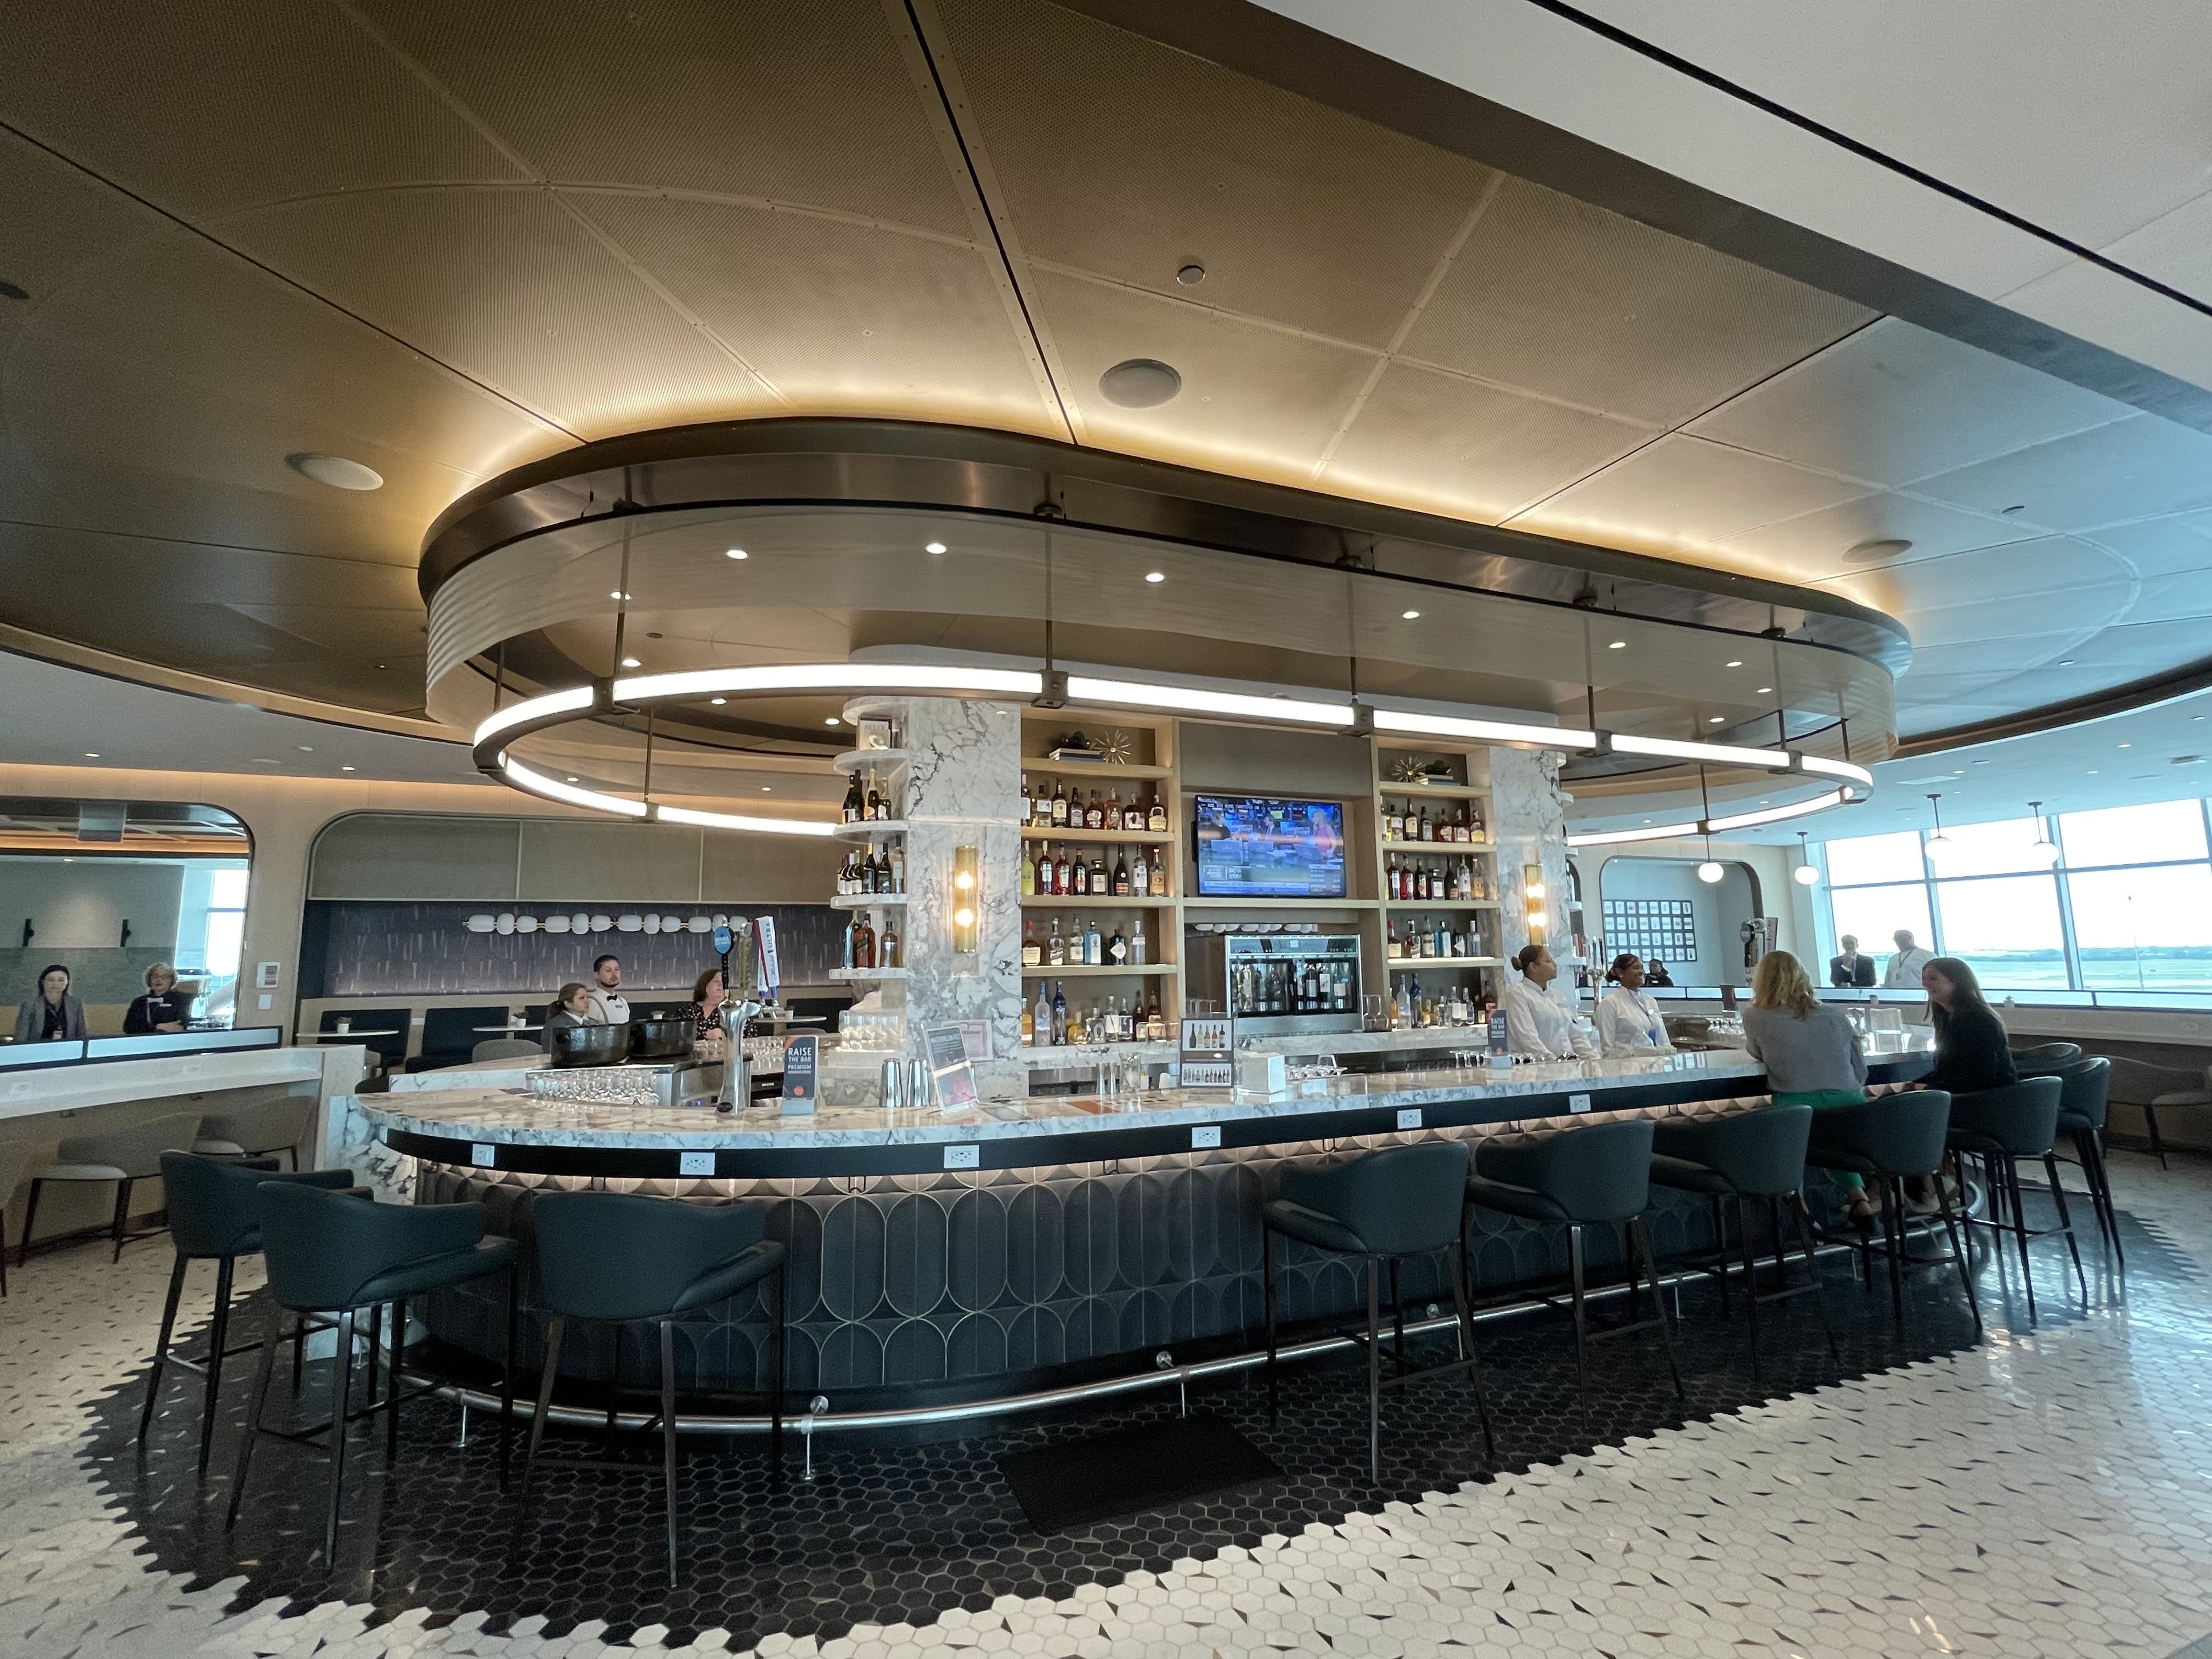 Delta está abrindo uma nova categoria de salas VIP premium em aeroportos este ano